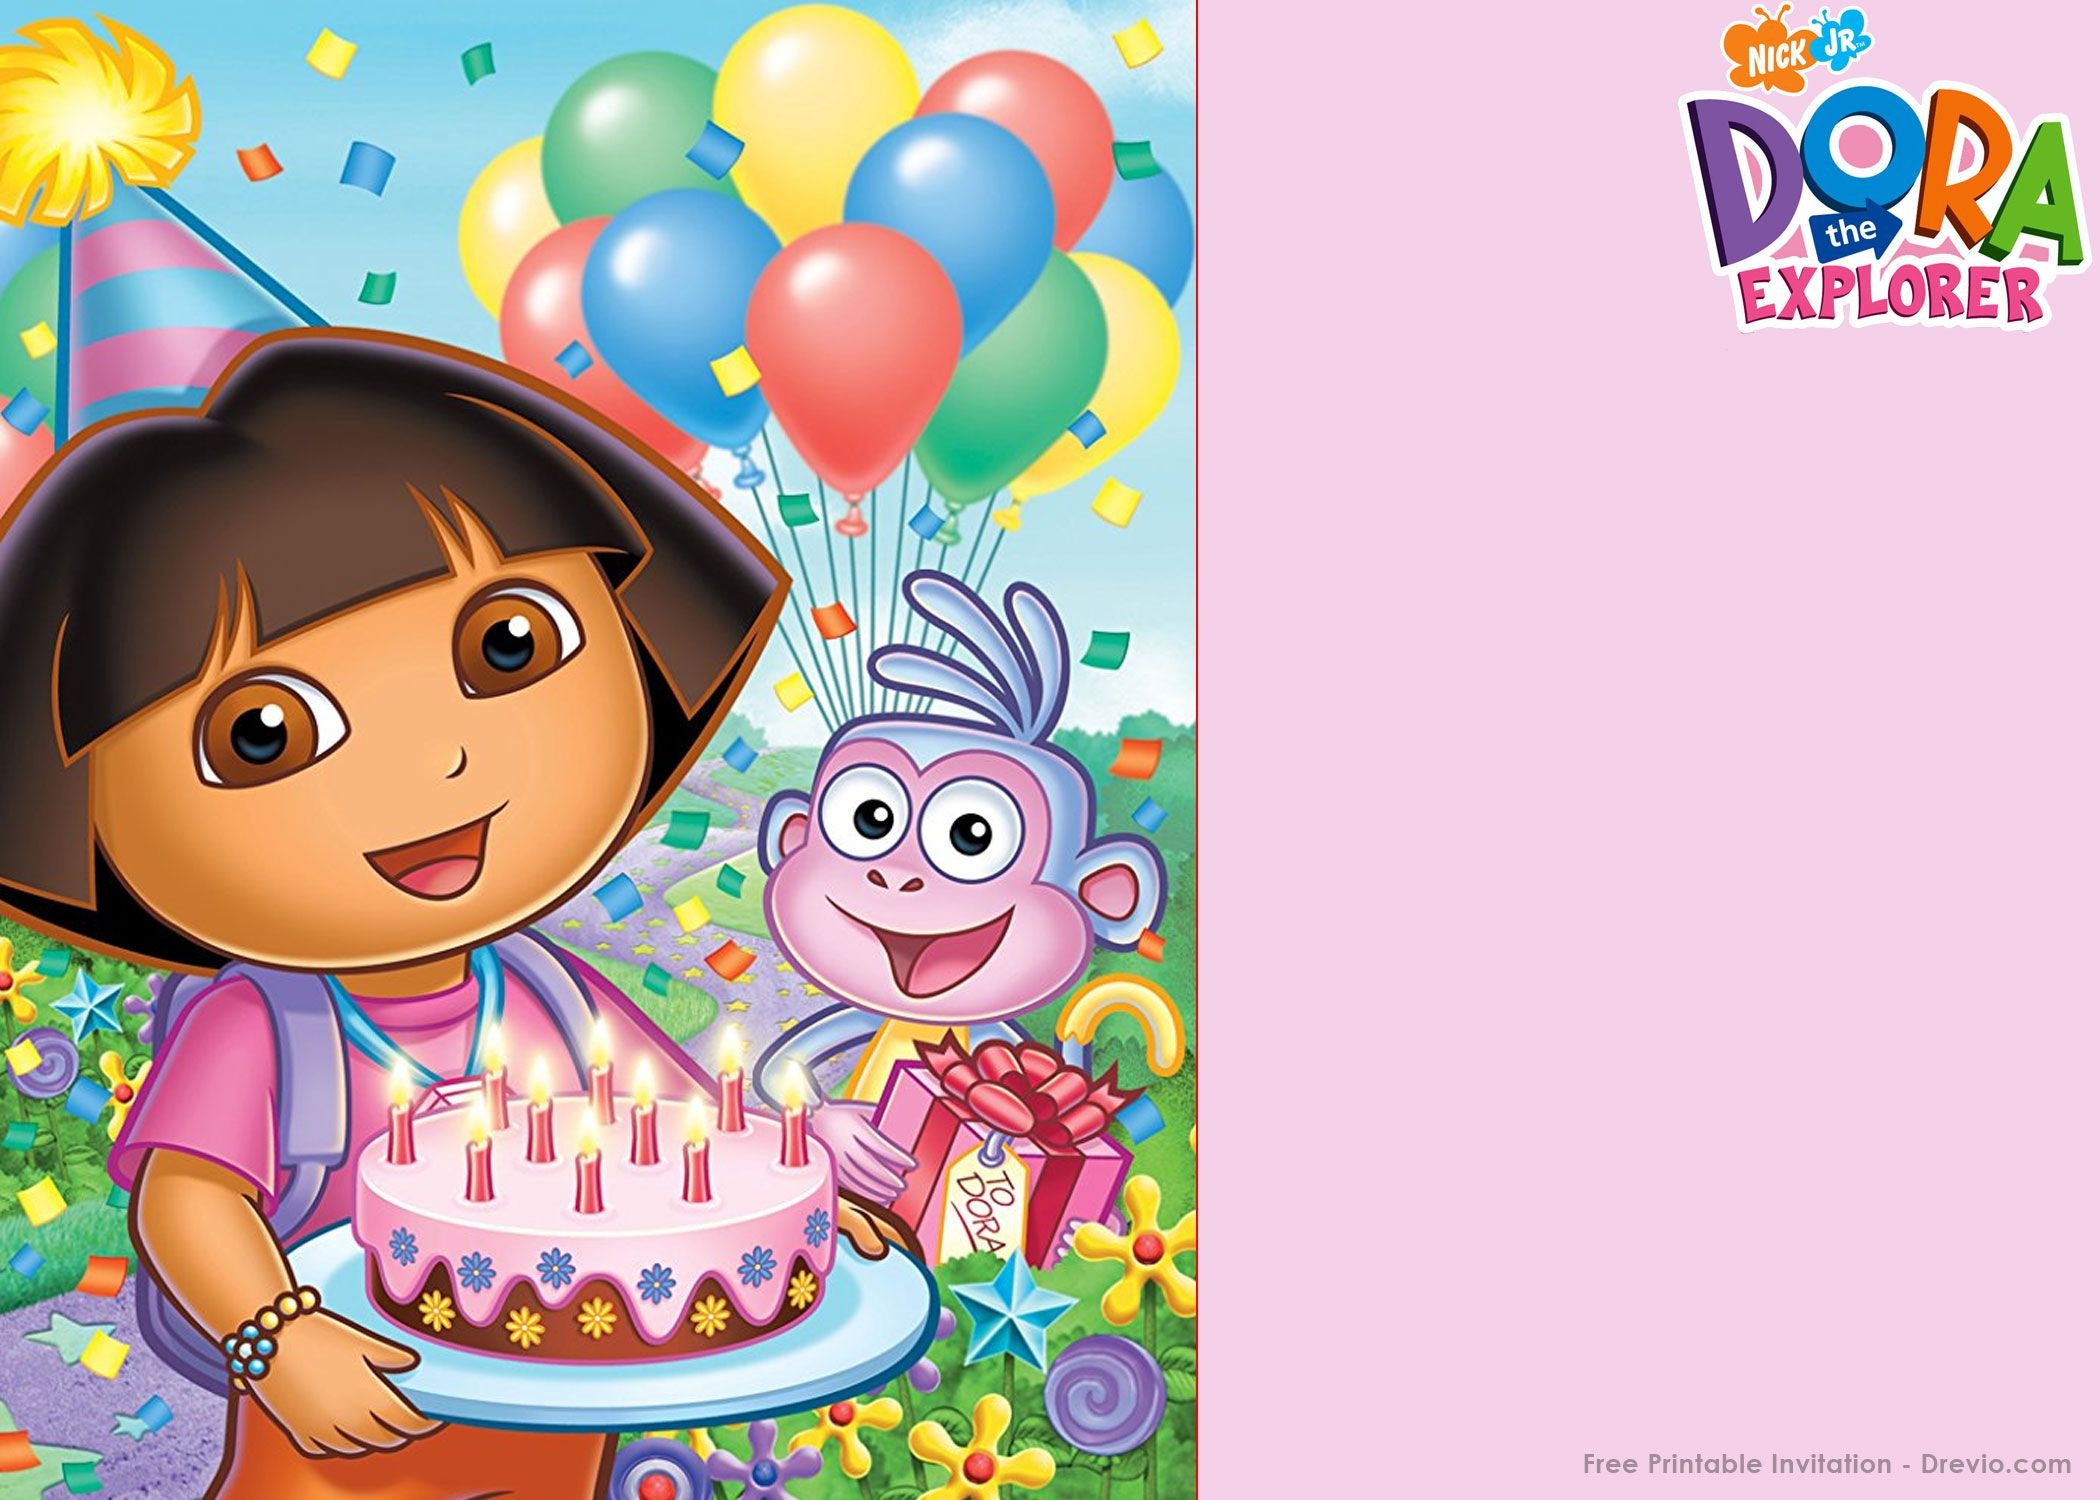 Free Printable Dora The Explorer Party Invitation | Birthday - Dora The Explorer Free Printable Invitations